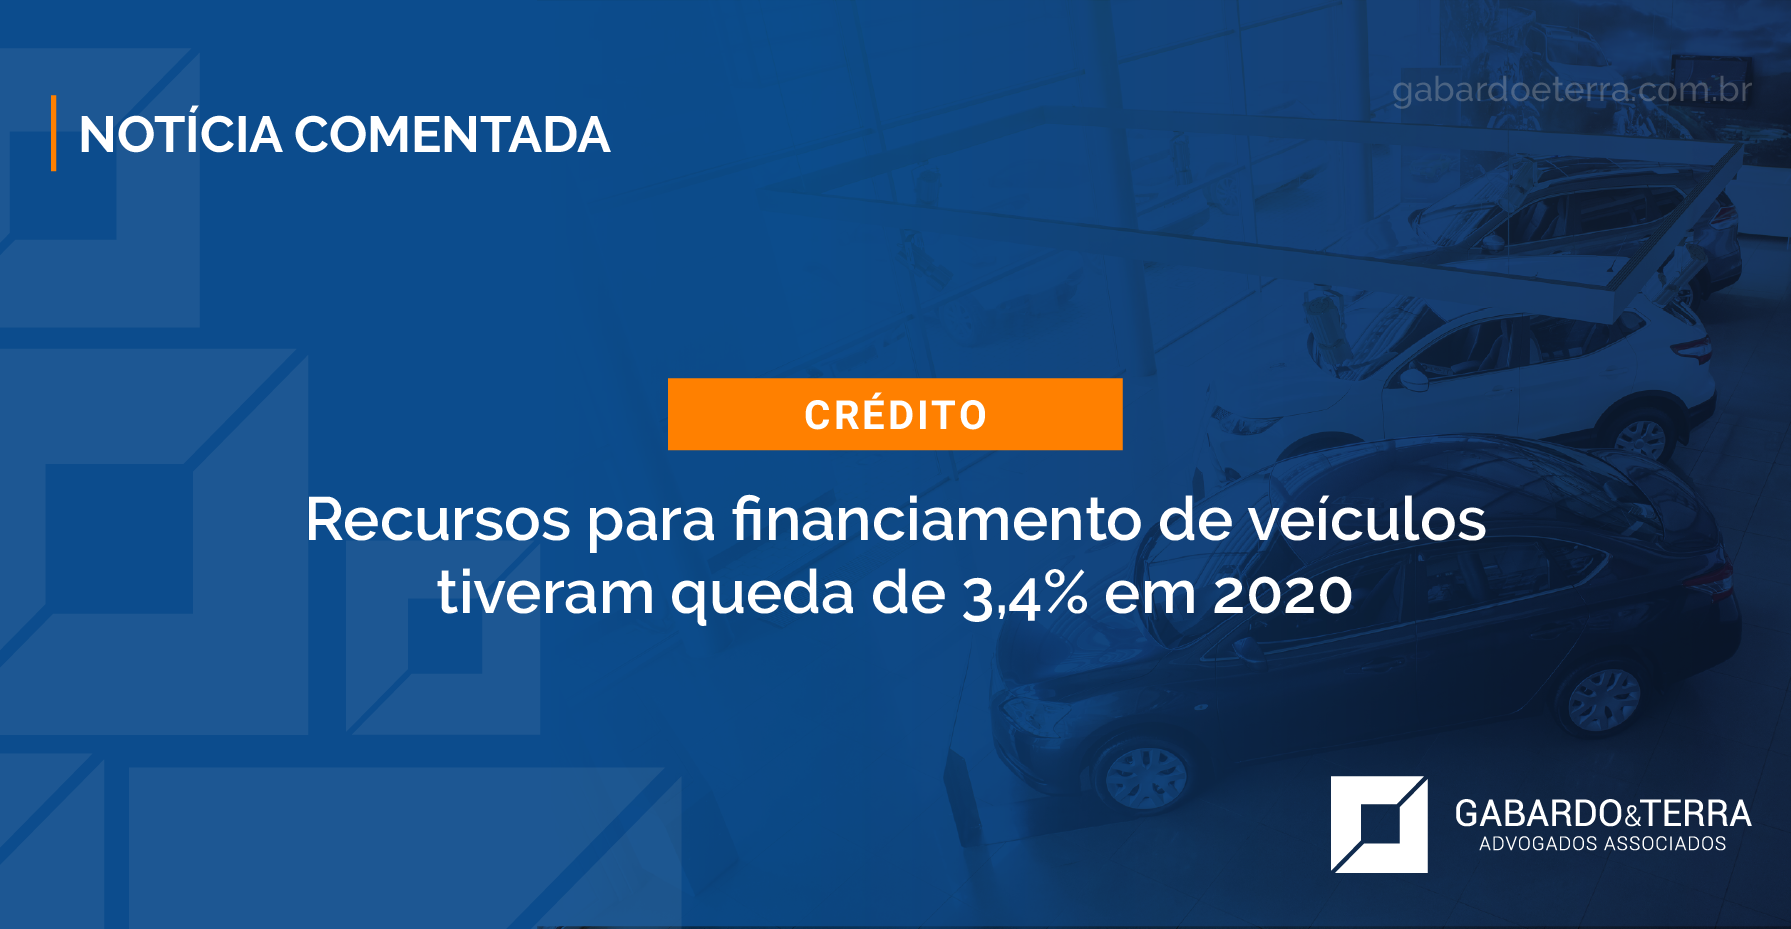 Recursos para financiamento de veículos tiveram queda de 3,4% em 2020